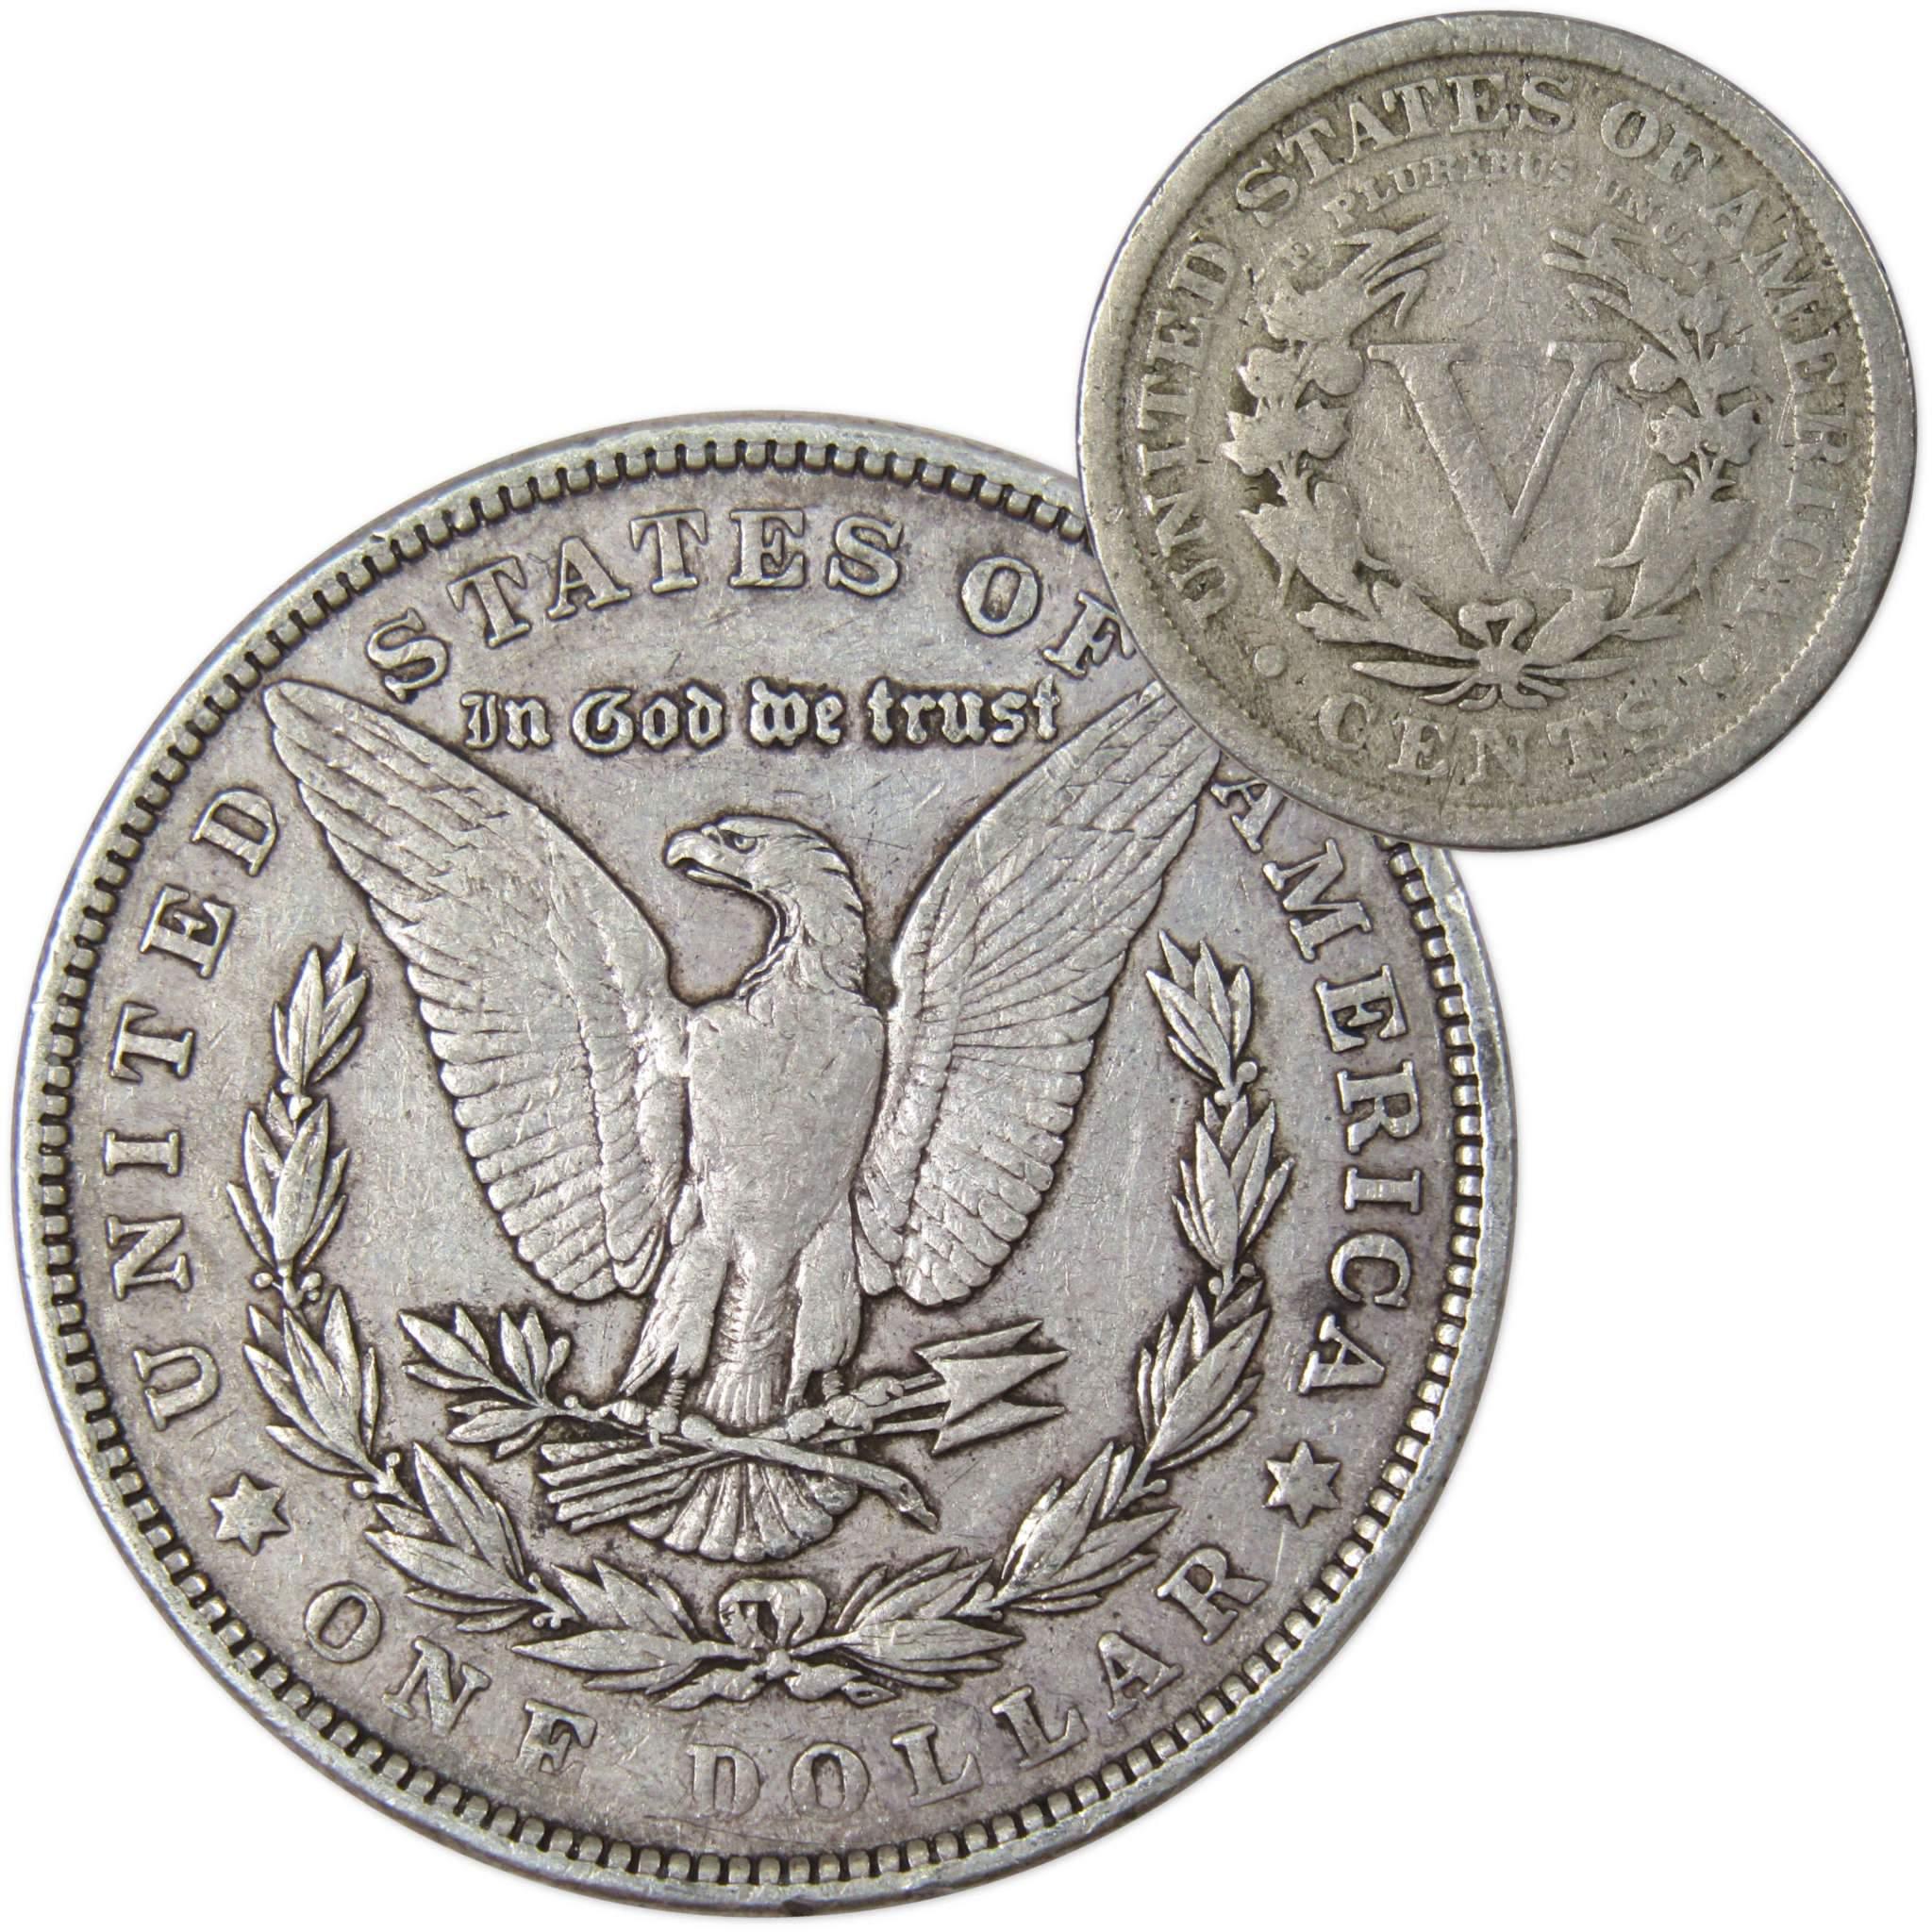 1902 Morgan Dollar VF Very Fine 90% Silver Coin with 1910 Liberty Nickel G Good - Morgan coin - Morgan silver dollar - Morgan silver dollar for sale - Profile Coins &amp; Collectibles